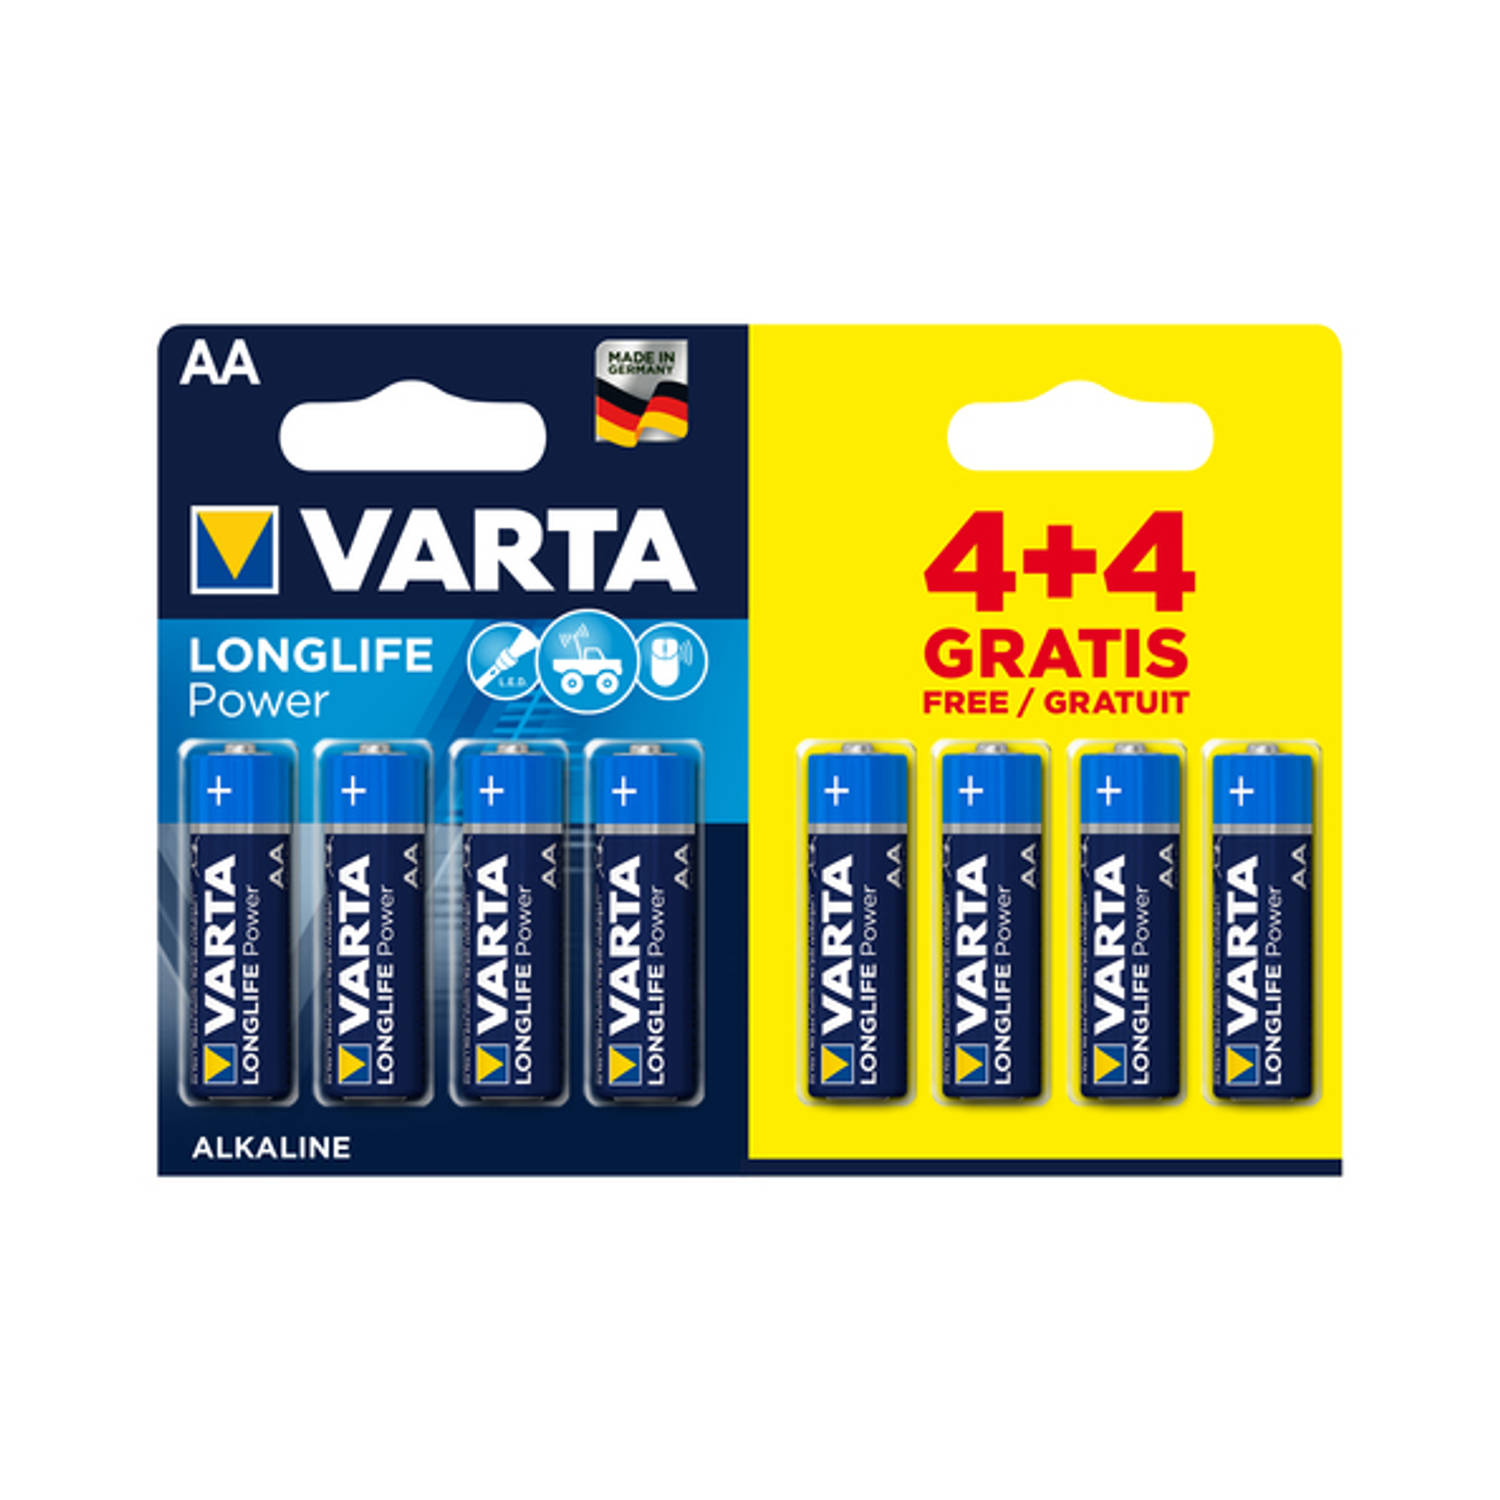 Varta - Longlife Power - AA - 4+4 x 20